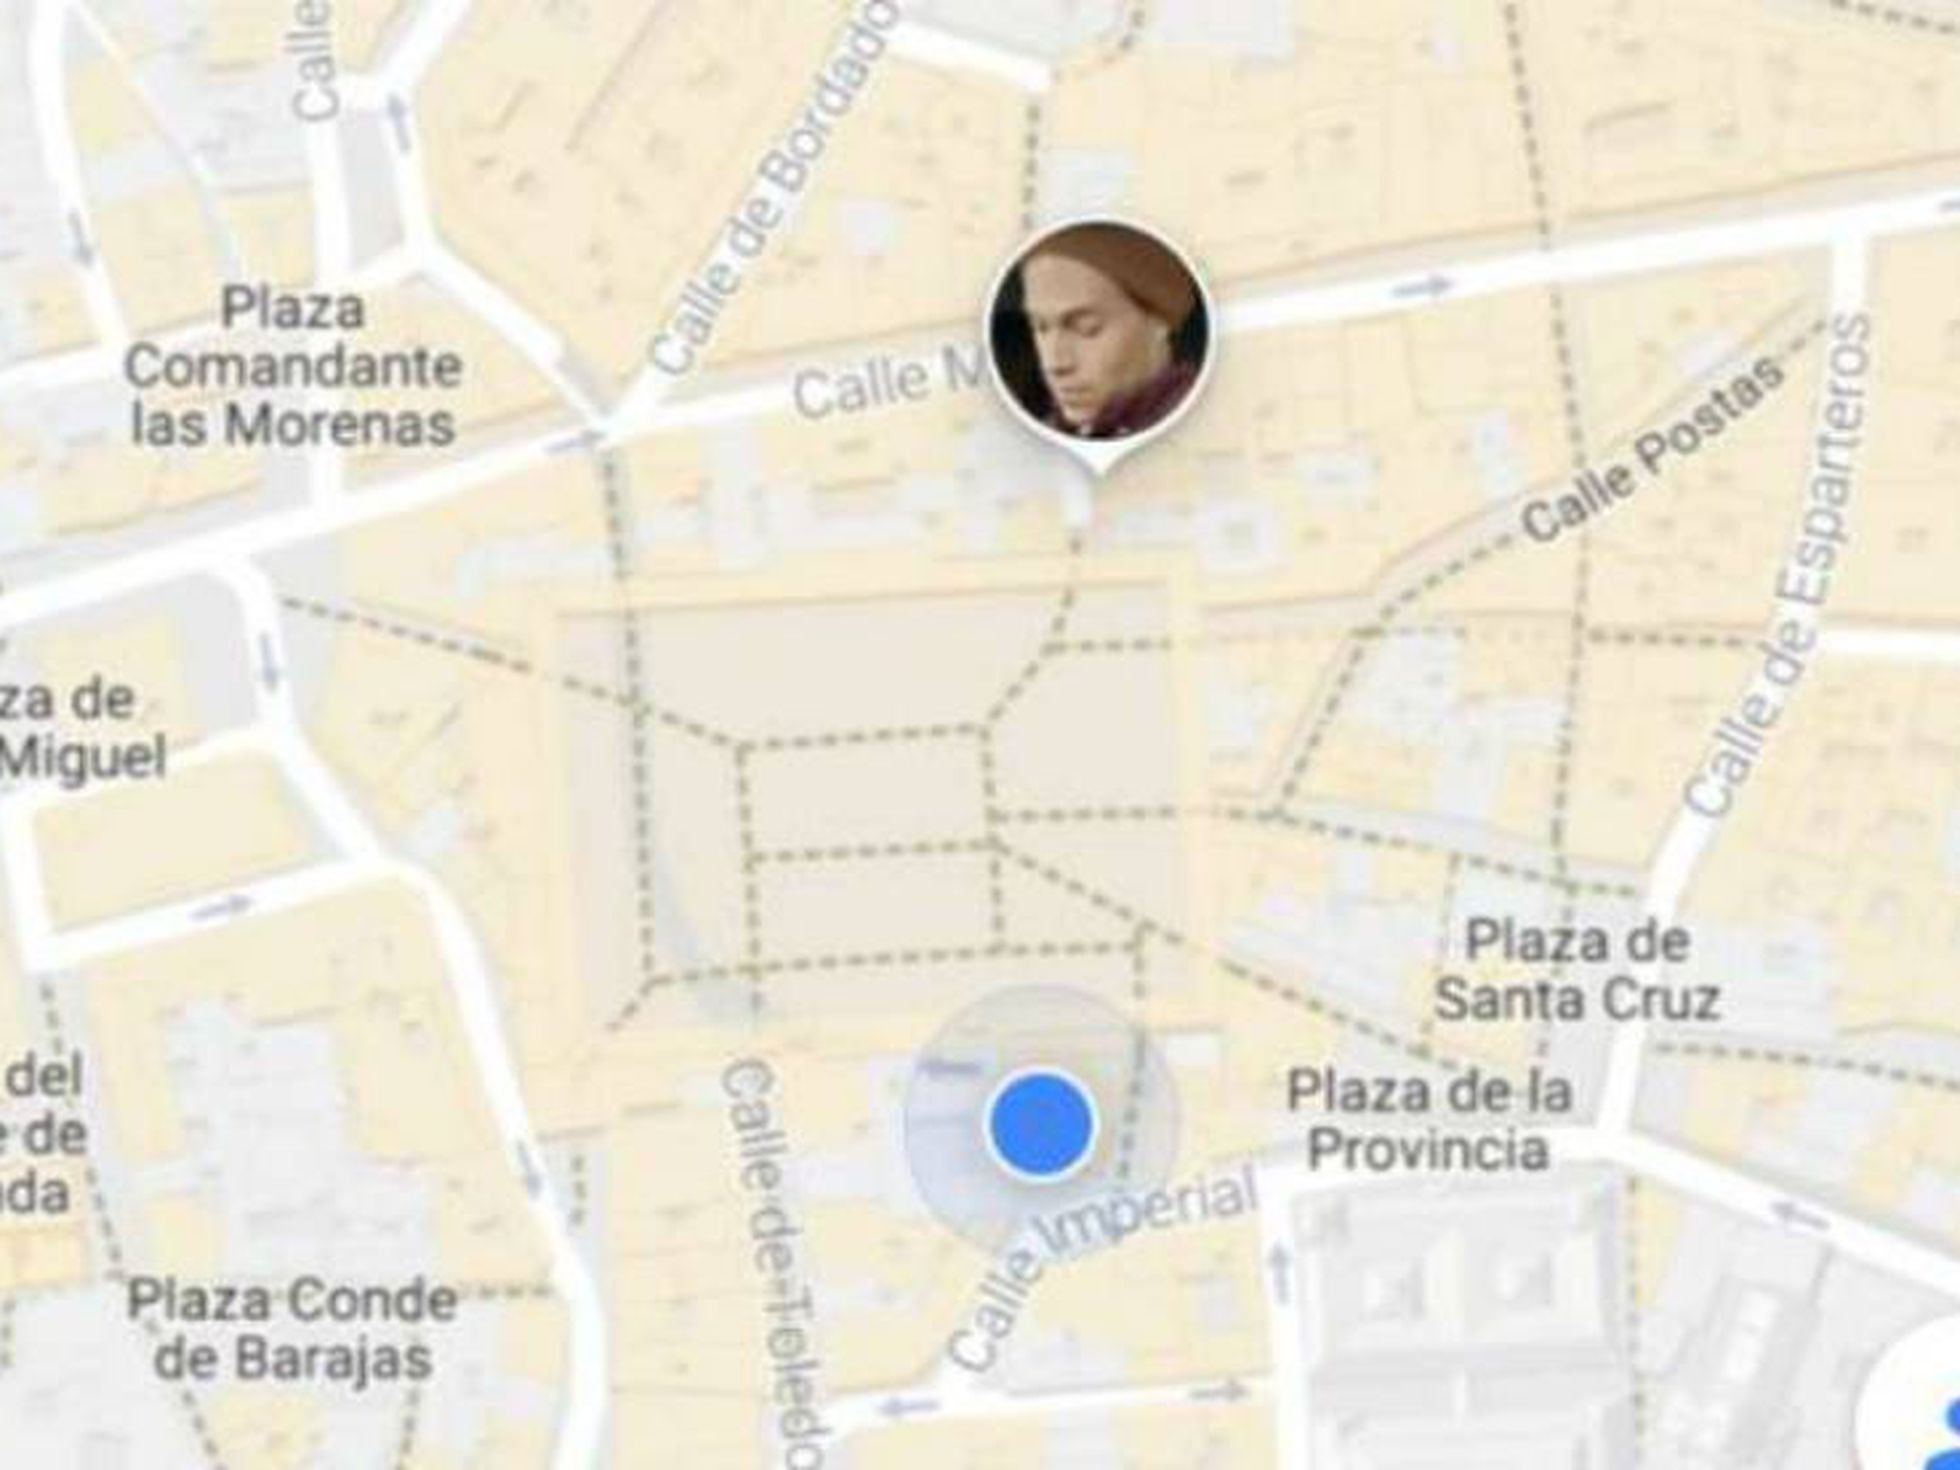 Álbum de graduación Taxi calcio Google Maps: ¿No se supone que estabas trabajando? | Tecnología | EL PAÍS